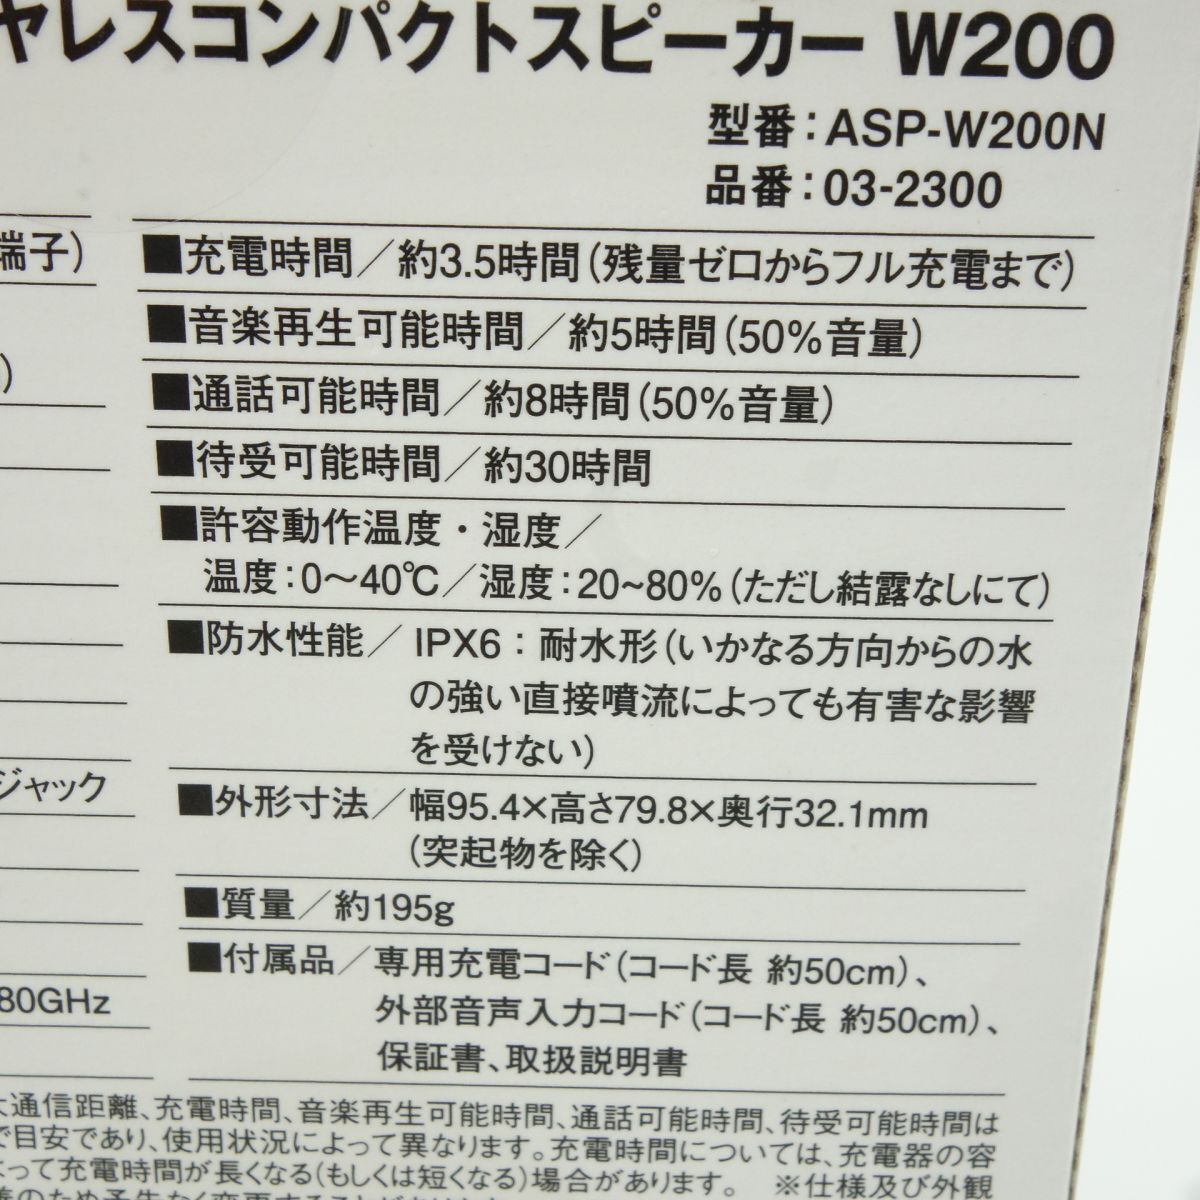 100【未開封】オーム電機 AudioComm ワイヤレスコンパクトスピーカー W200 ASP-W200N 03-2300_画像7